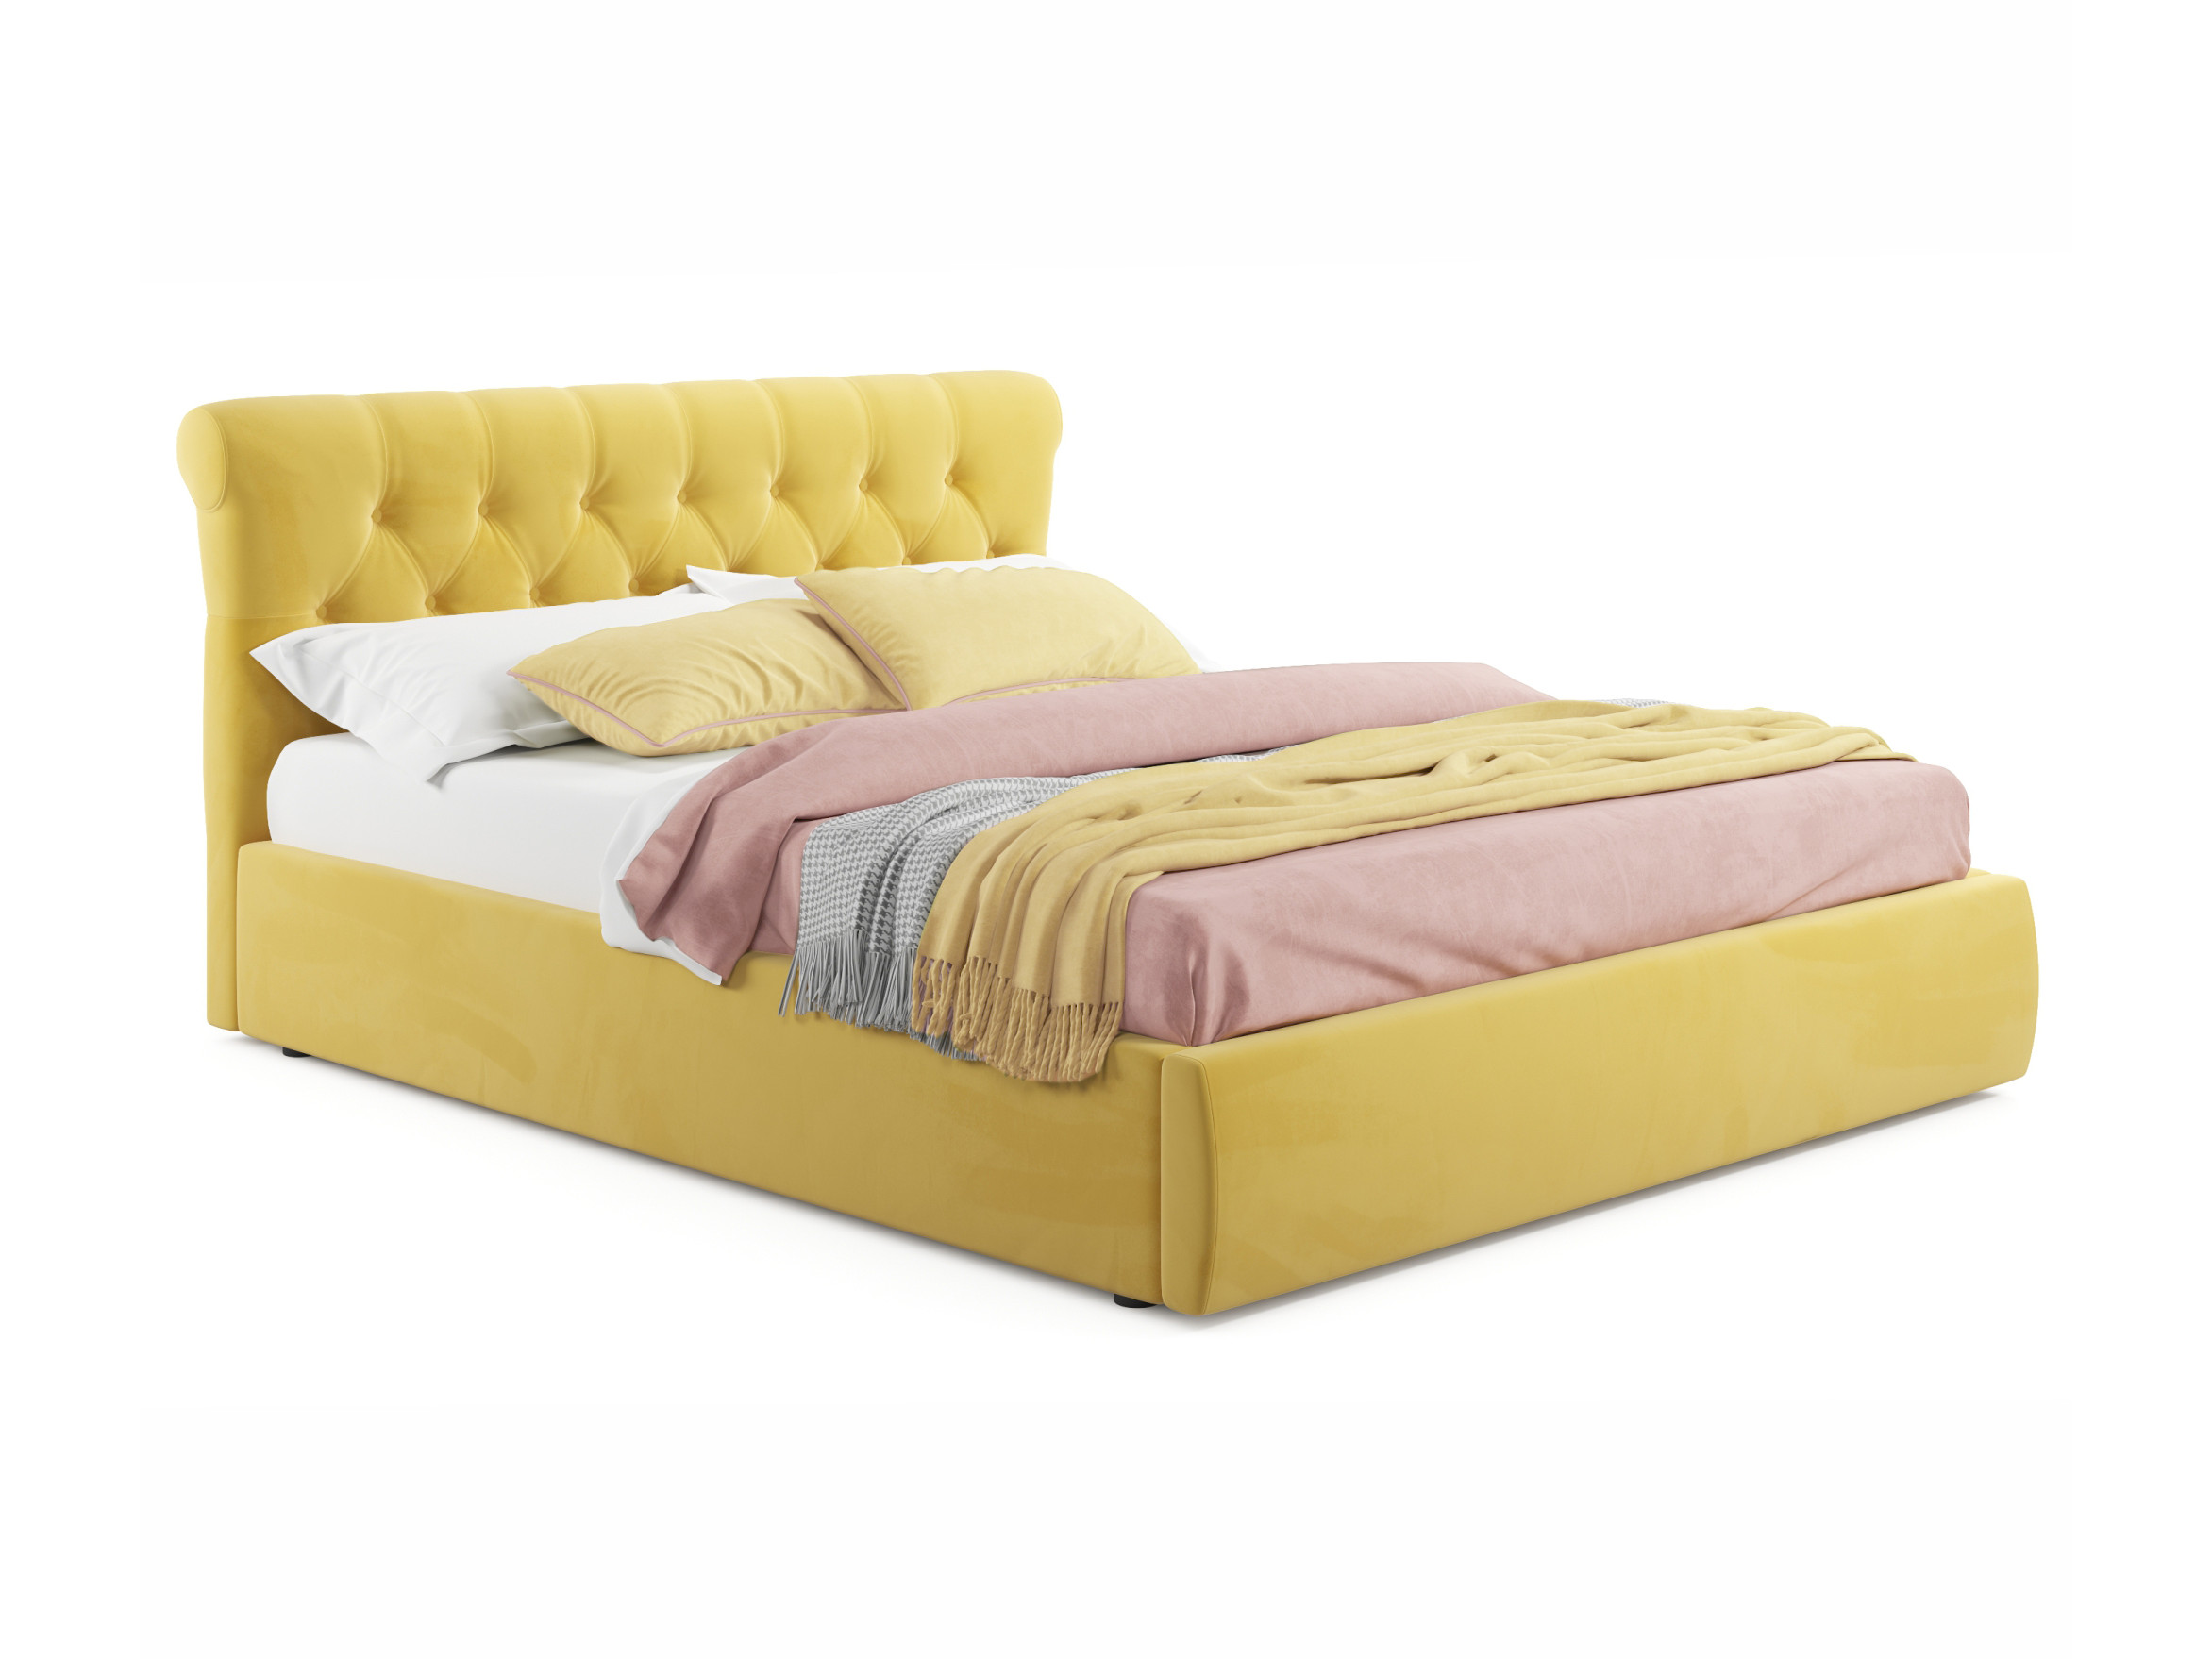 Мягкая кровать Ameli 1600 желтая с подъемным механизмом желтый, Желтый, Велюр, ДСП мягкая кровать ameli 1400 желтая с подъемным механизмом желтый желтый велюр дсп